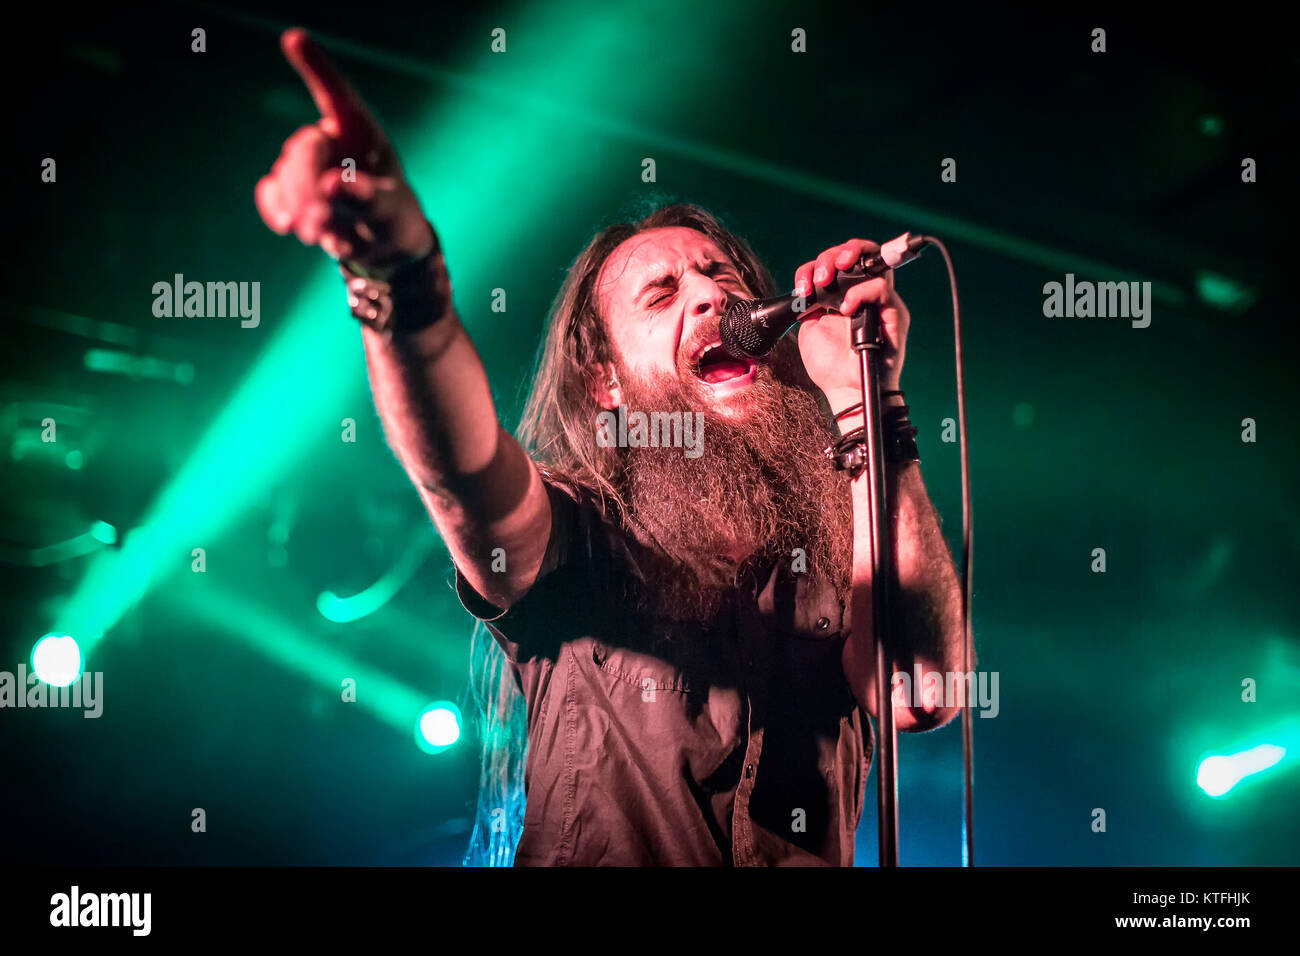 Le groupe de doom metal italien Rives de Null effectue un concert live à John Dee dans le cadre du festival Inferno Metal Festival 2016 à Oslo. Ici le chanteur Davide Straccione est vu sur scène. La Norvège, 24/03 2016. Banque D'Images